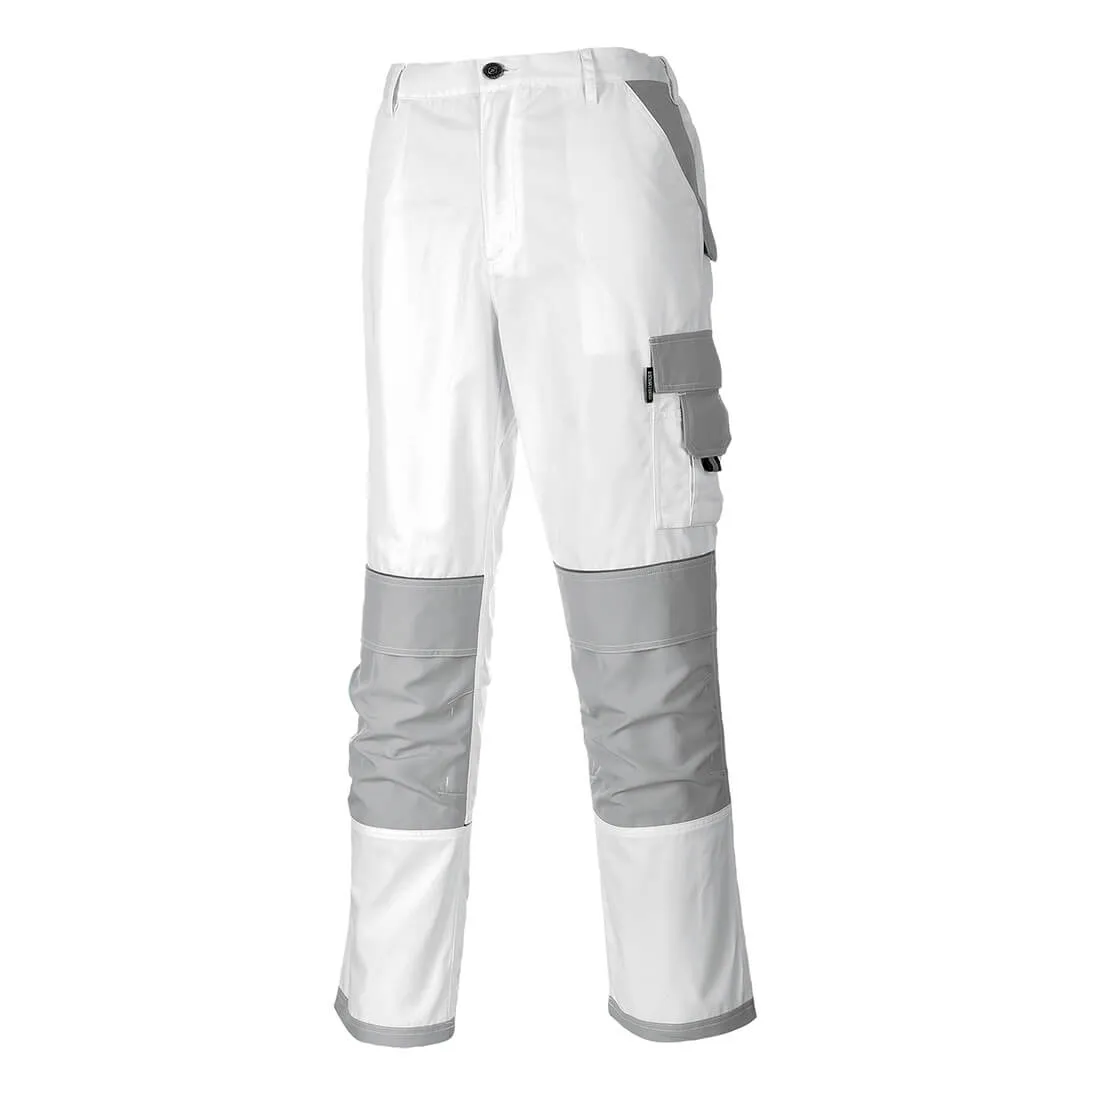 Portwest KS54 Painters Pro Trousers - White, Large, 31"